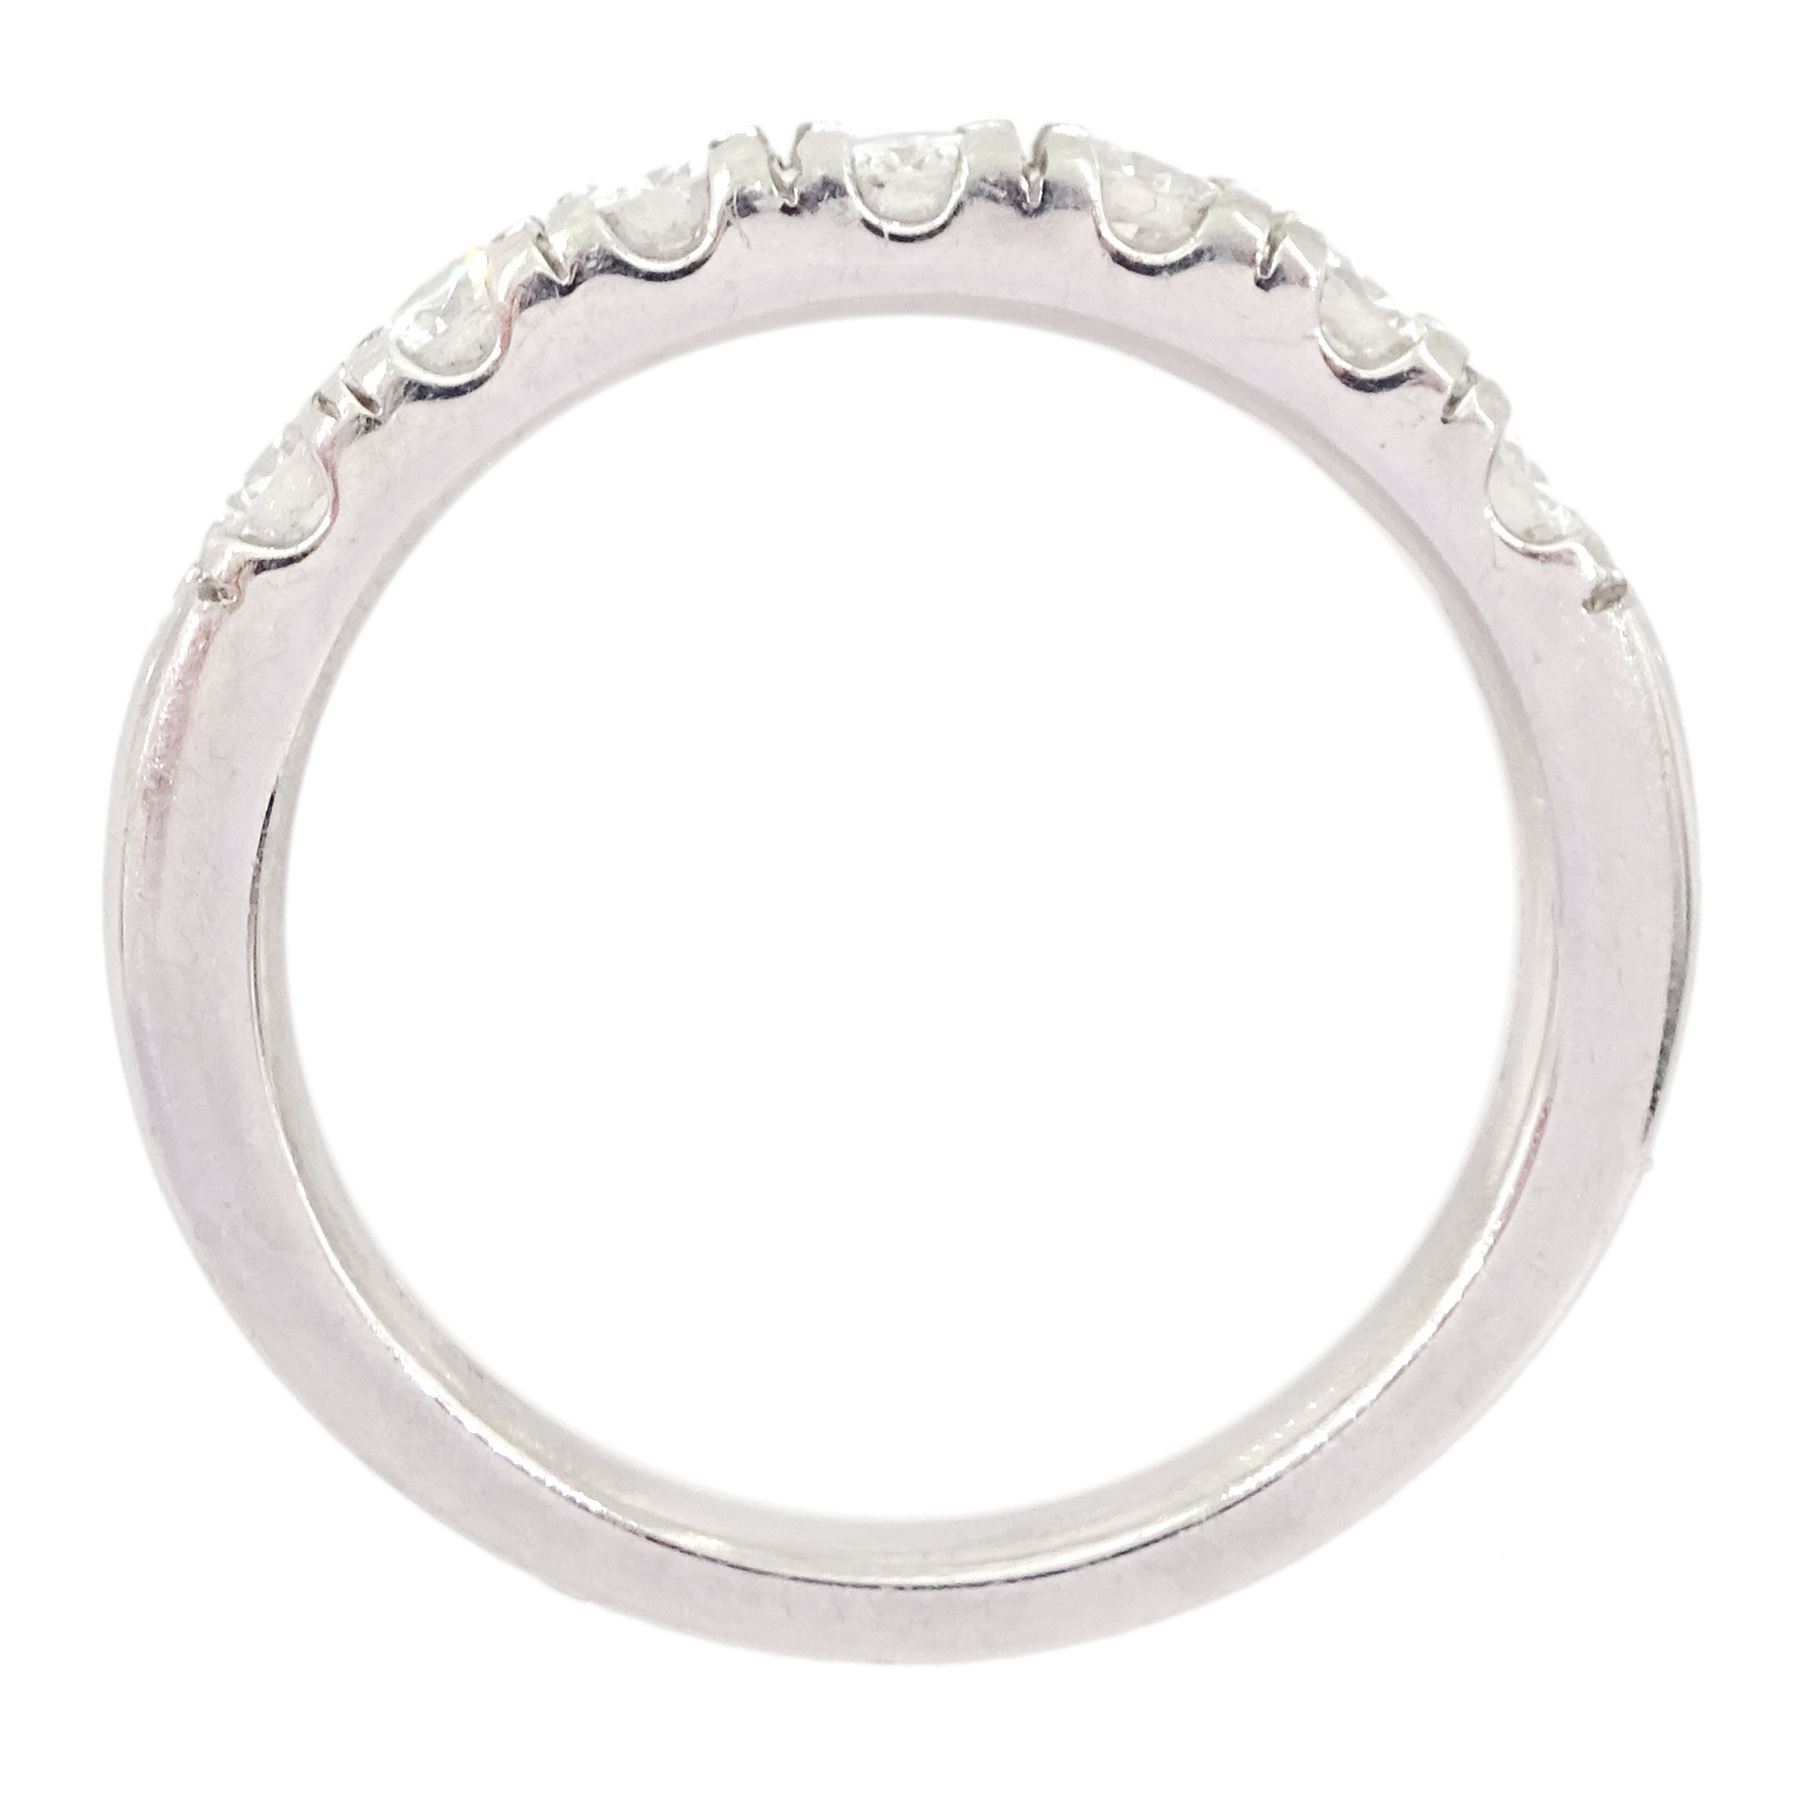 Platinum round brilliant cut diamond half eternity ring - Image 4 of 4